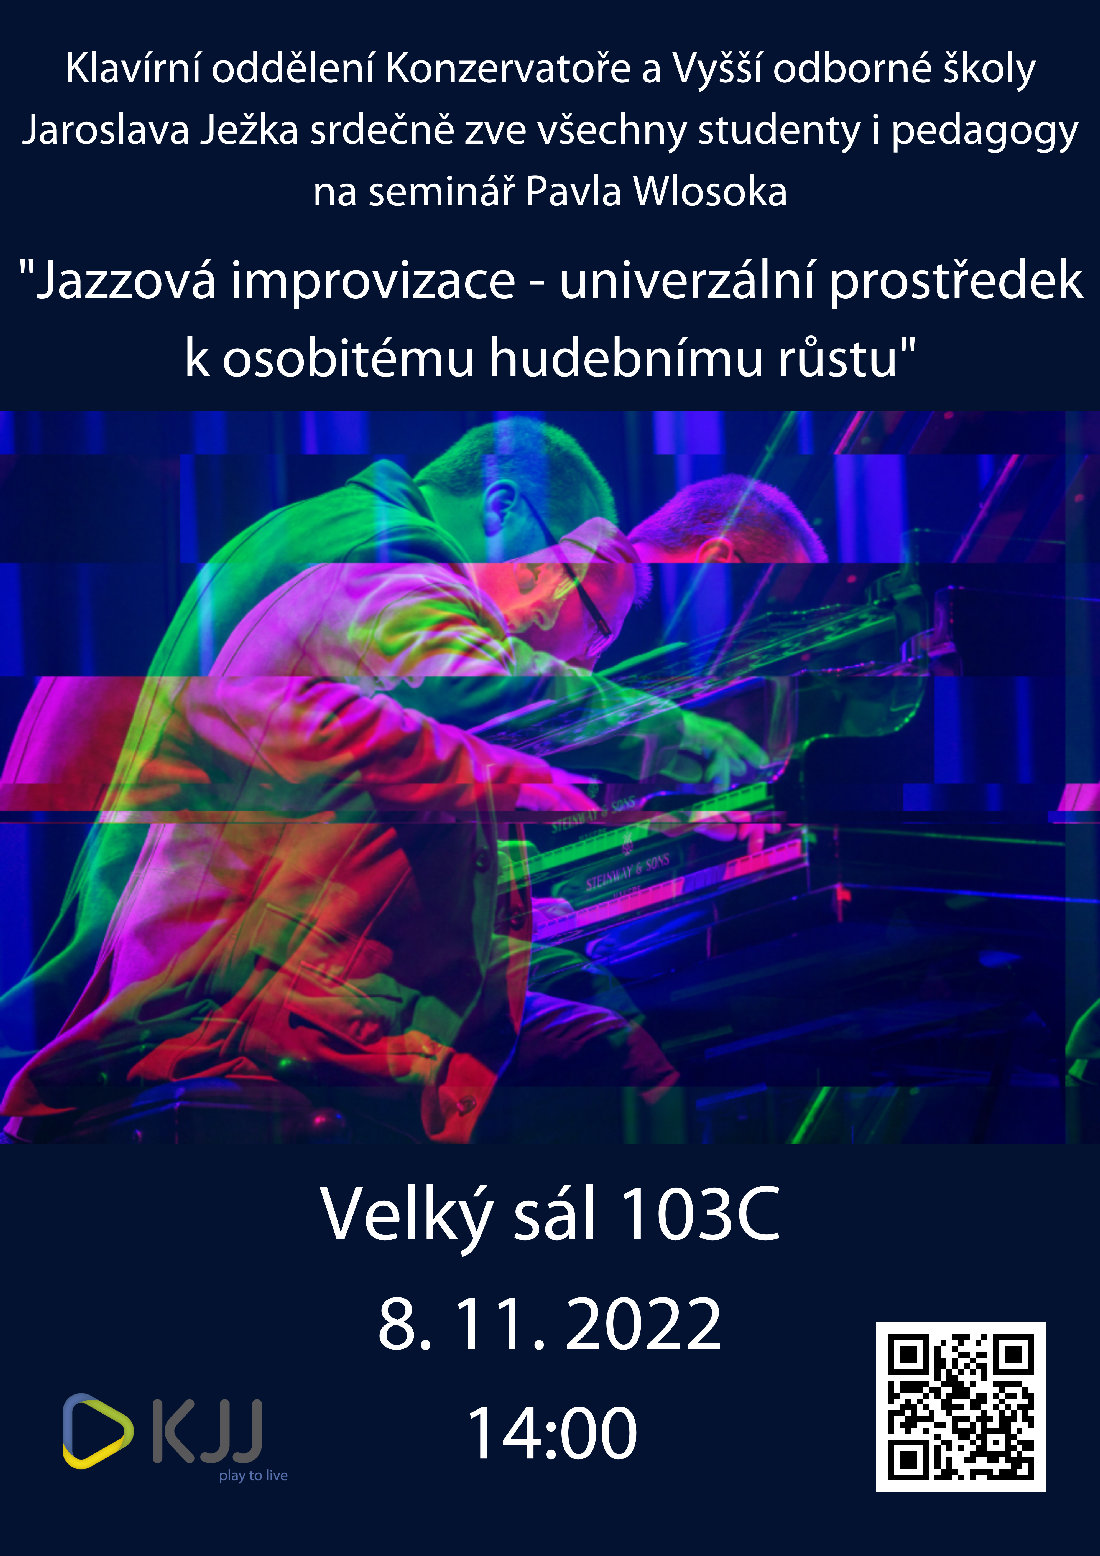 Pavel Wlosok – „Jazzová improvizace - univerzální prostředek k osobitému hudebnímu růstu“, Velký sál školy 103C